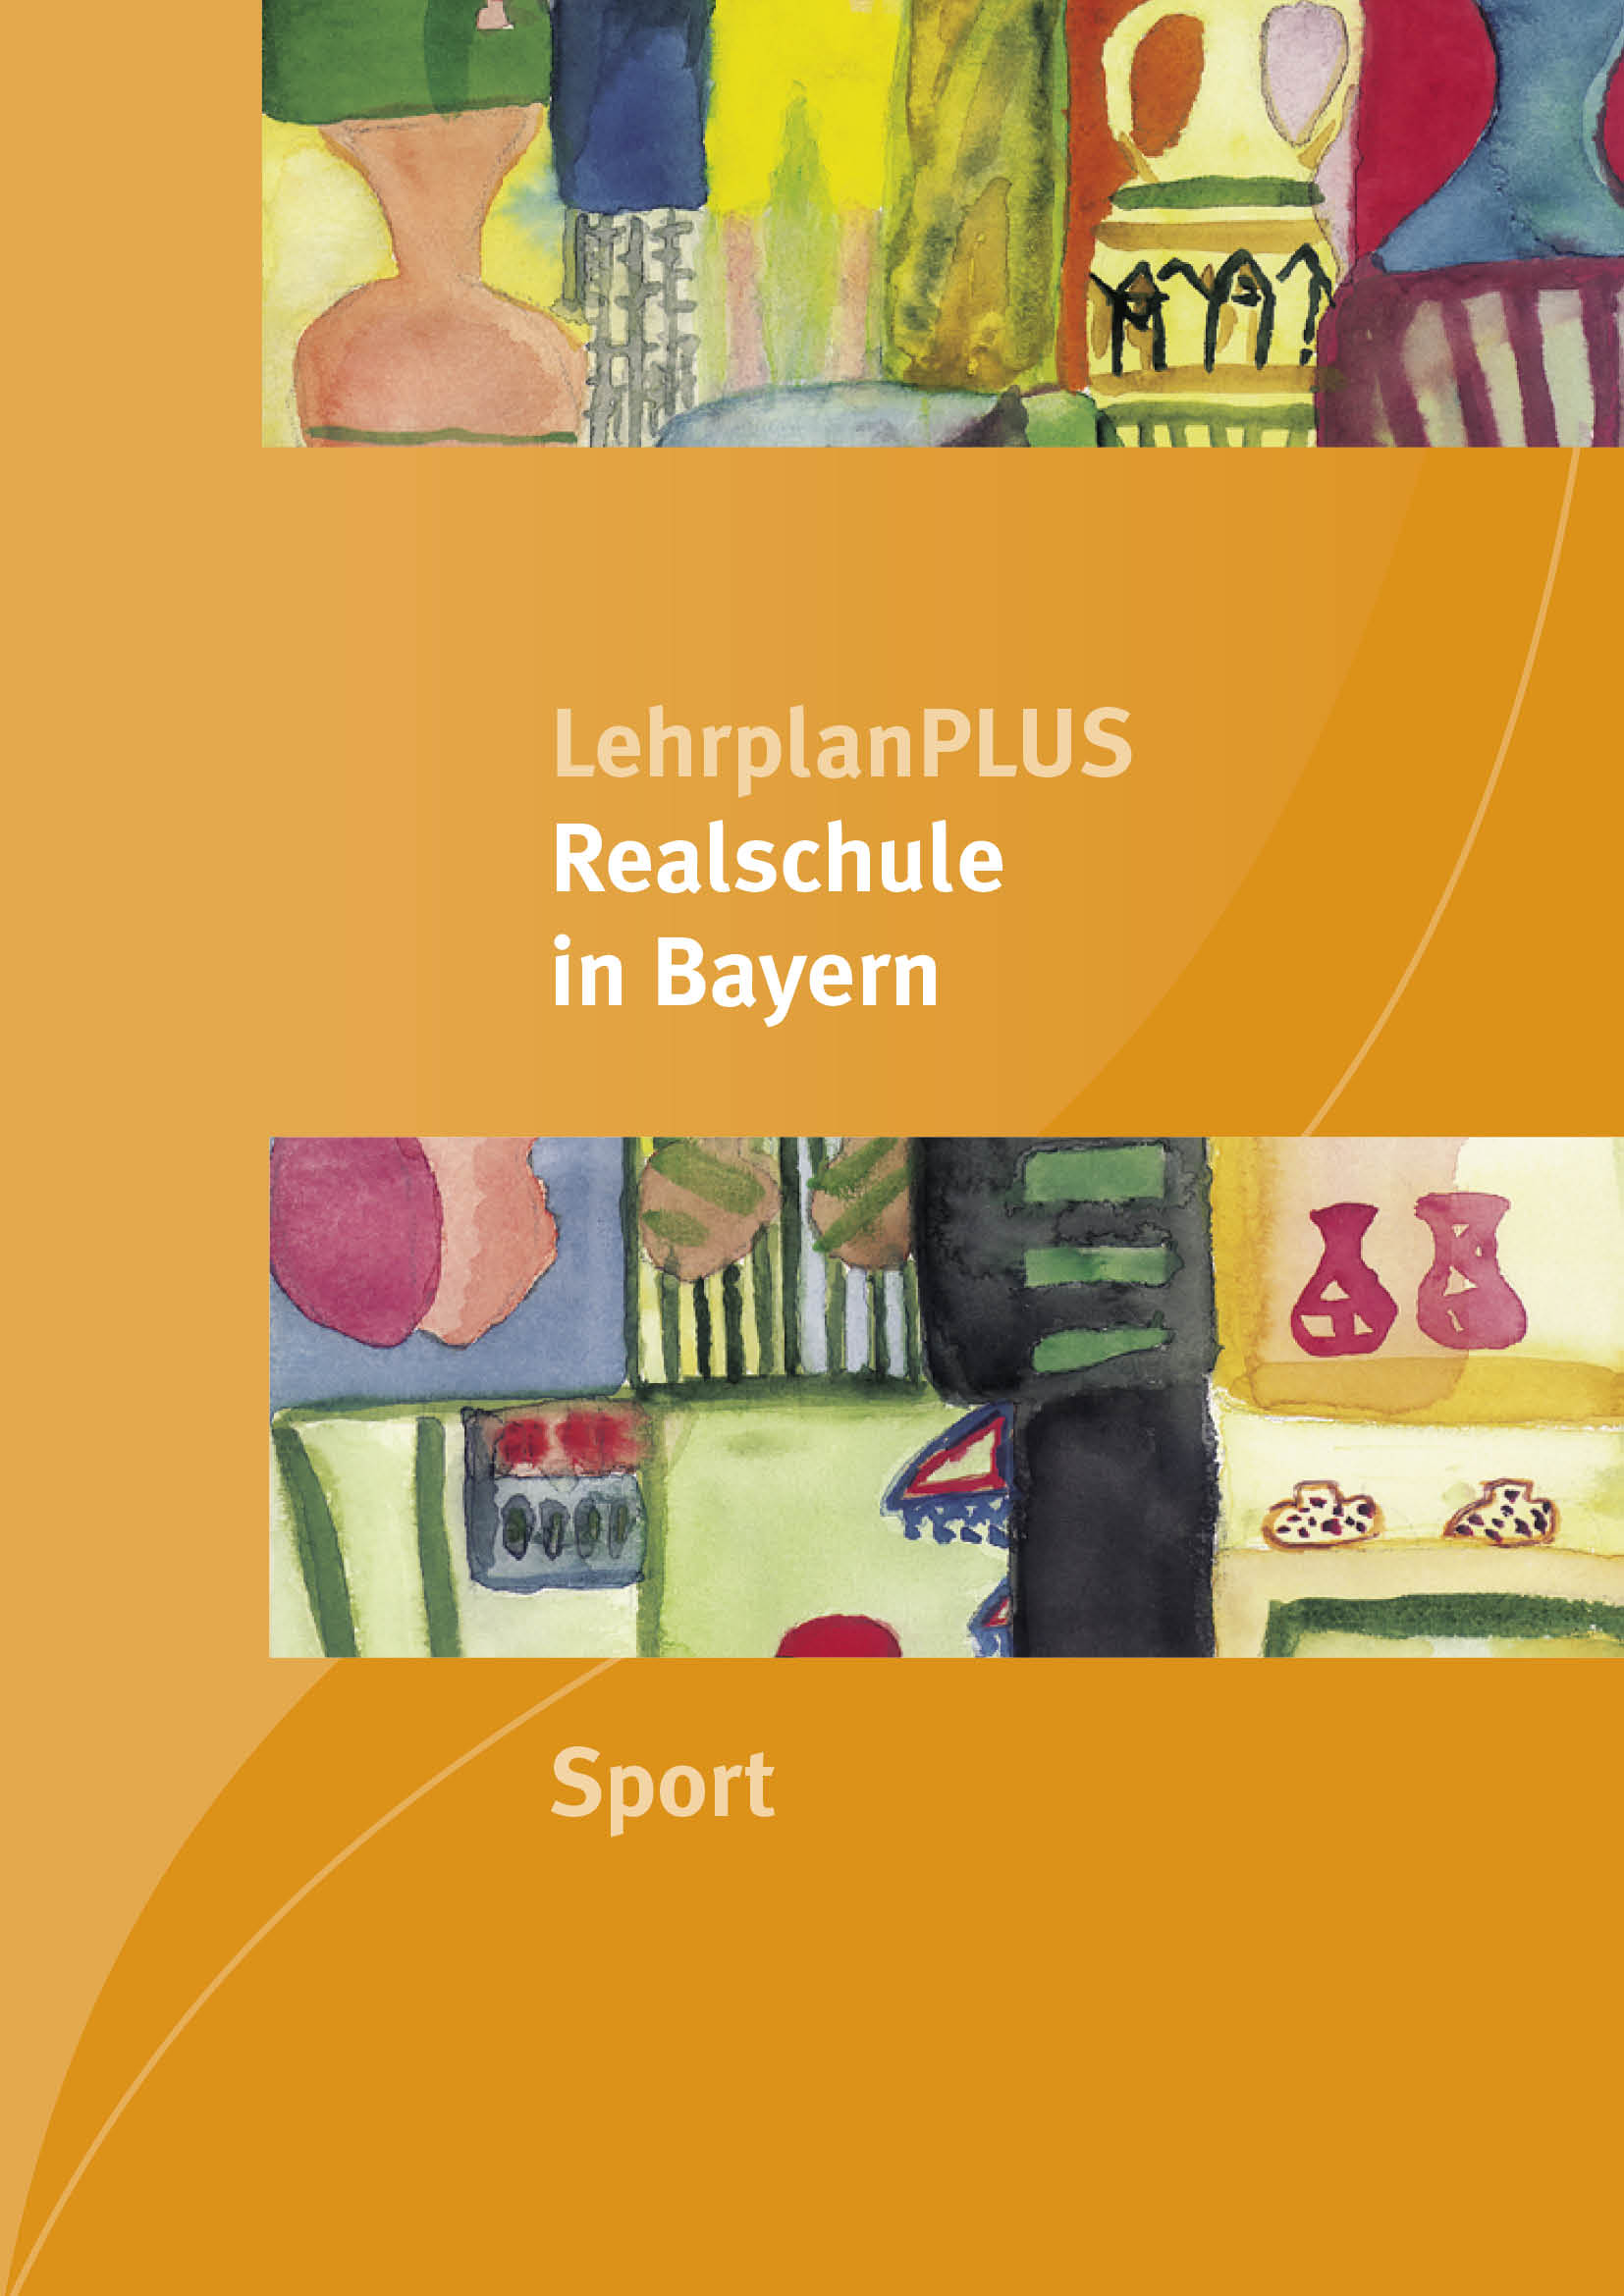 LehrplanPLUS Realschule in Bayern - Sport